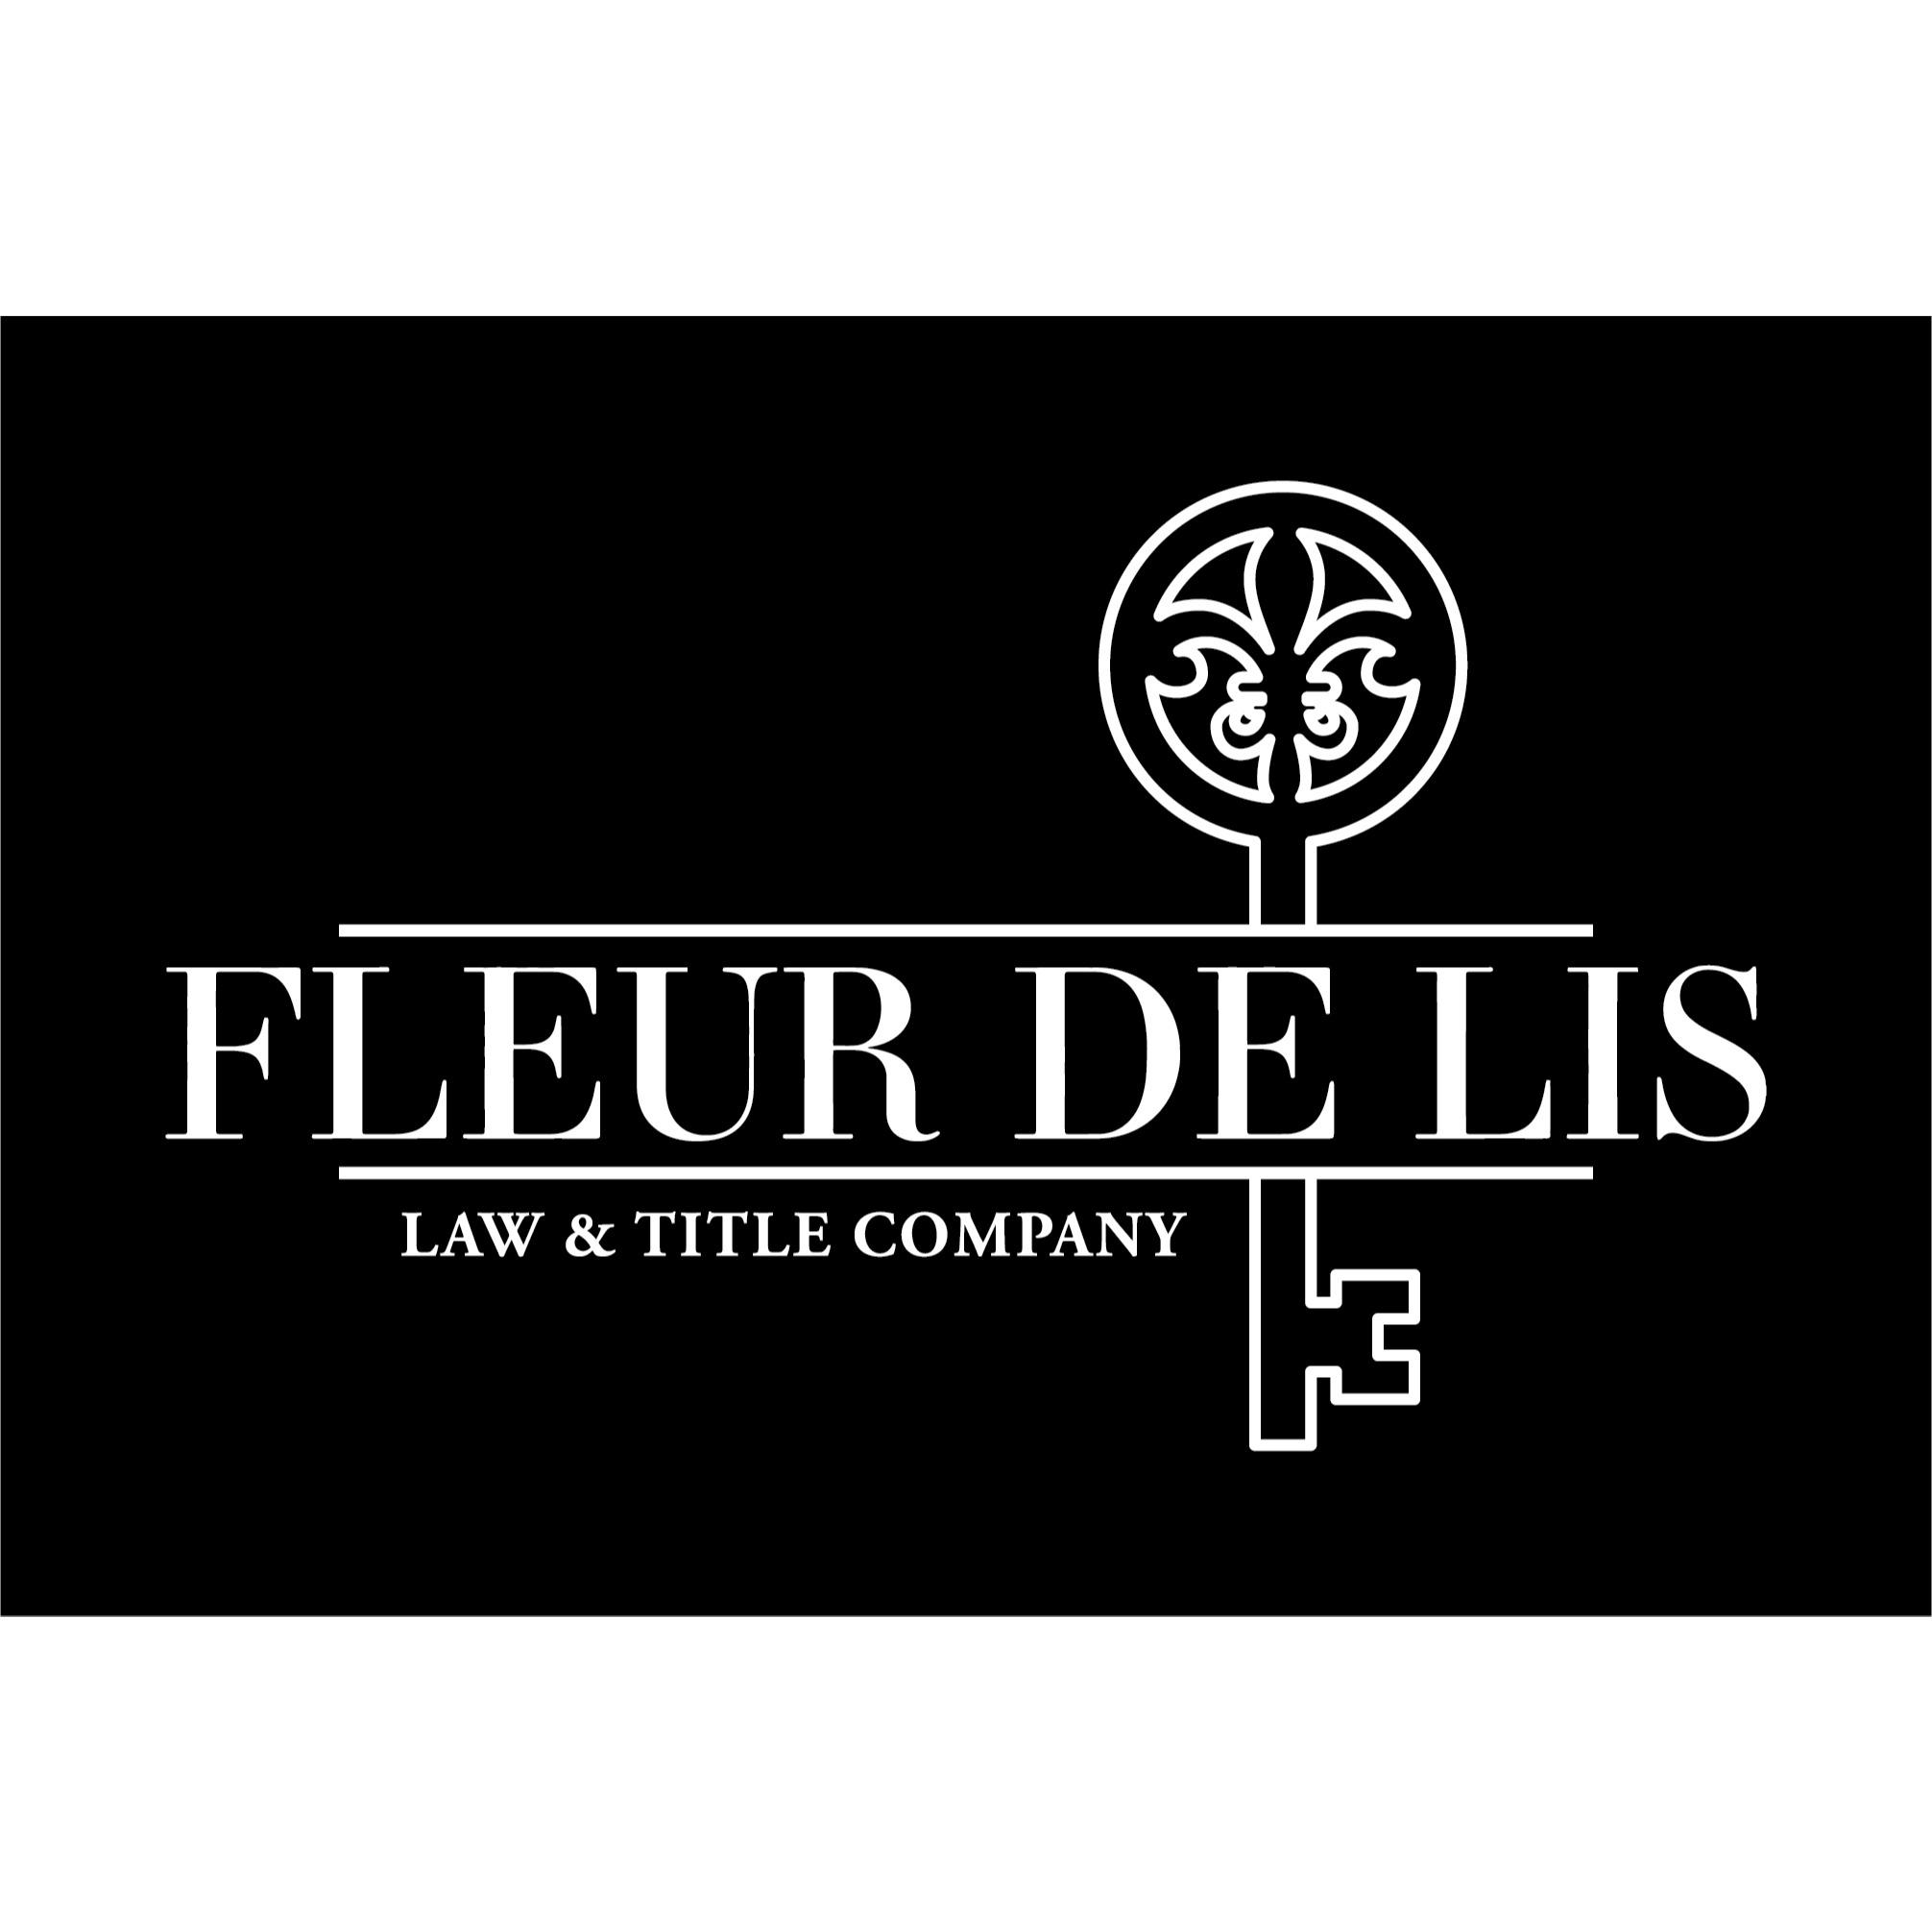 Fleur De Lis Law & Title Company